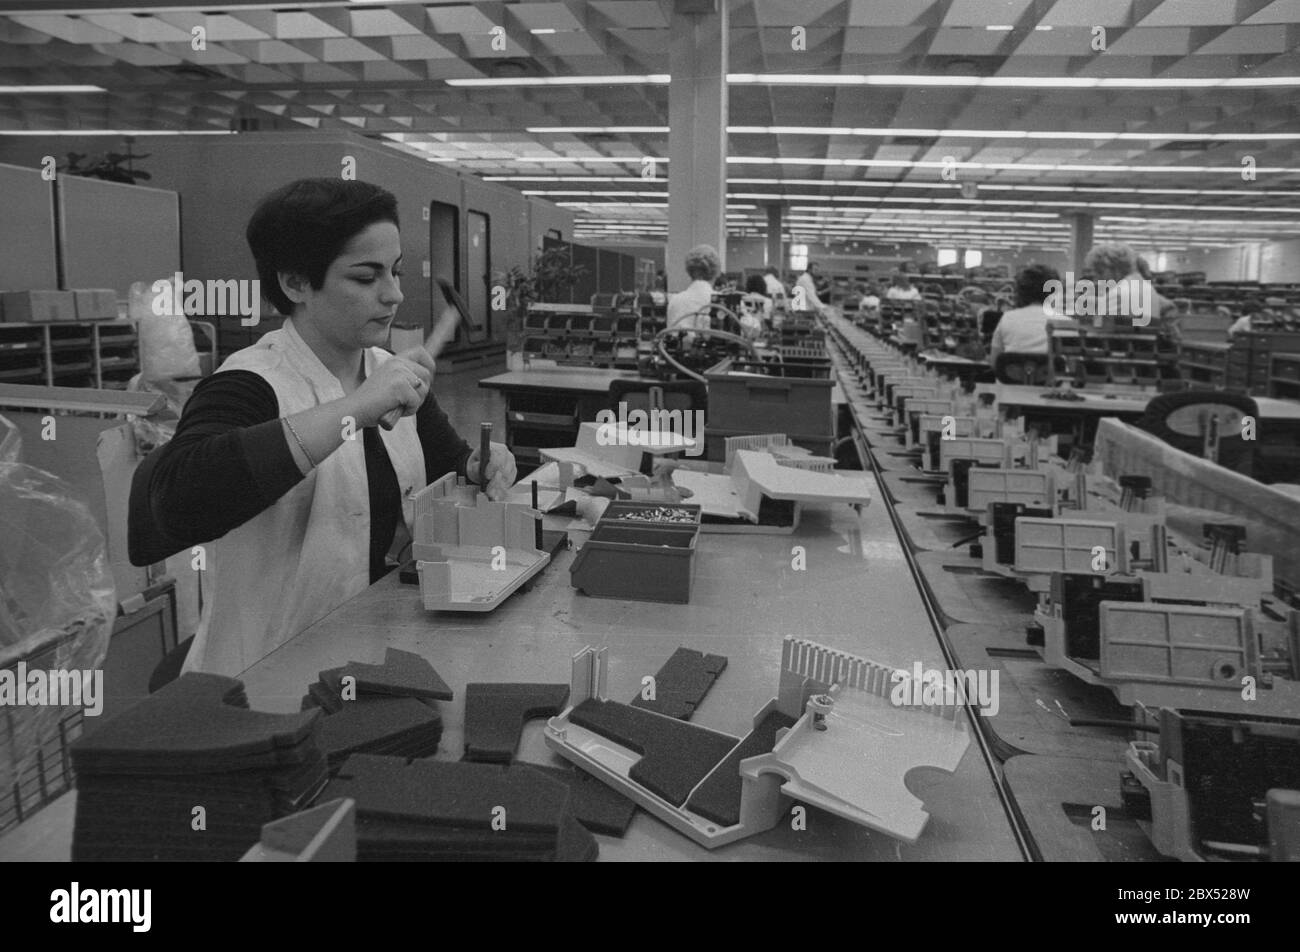 Quartiers de Berlin / Spandau / 6.10.1979 Teleprinter usine Siemens. Production mécanique, pas de robots, beaucoup de travail manuel. De nombreuses femmes assemblent les appareils // Industrie / Siemensstadt [traduction automatique] Banque D'Images